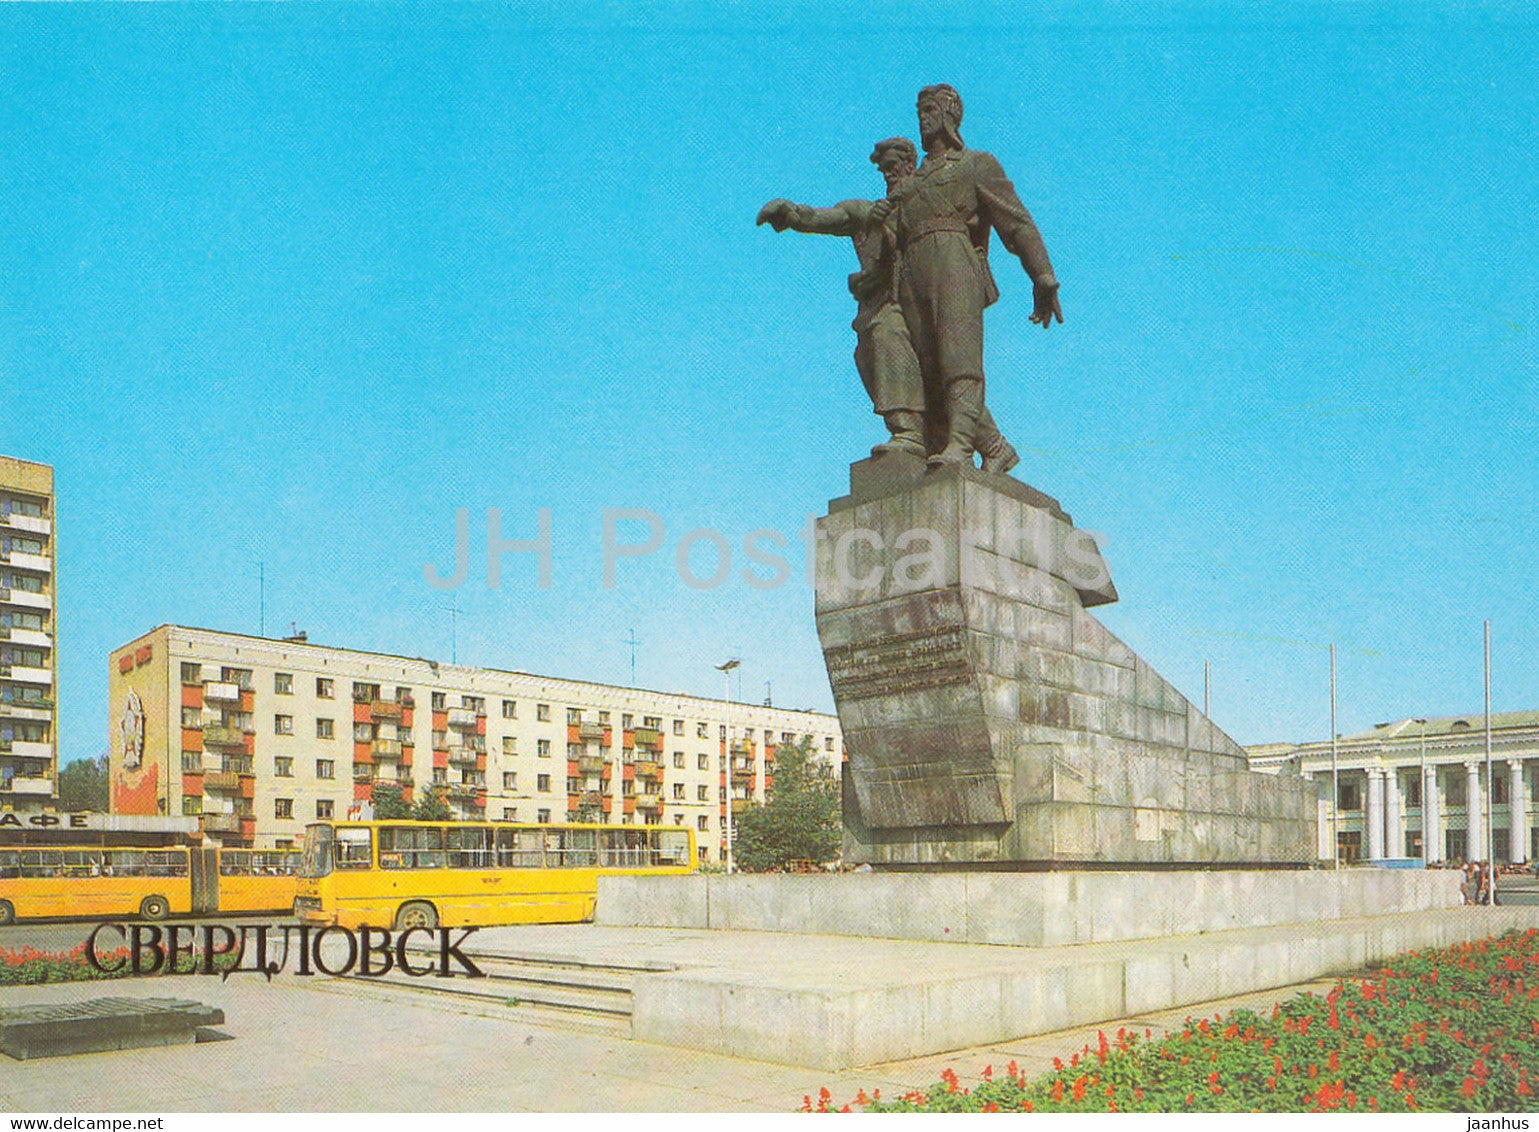 Sverdlovsk - Yekaterinburg - monument to soldiers of Ural Volunteer Tank Corps - bus Ikarus 1986 - Russia USSR - unused - JH Postcards